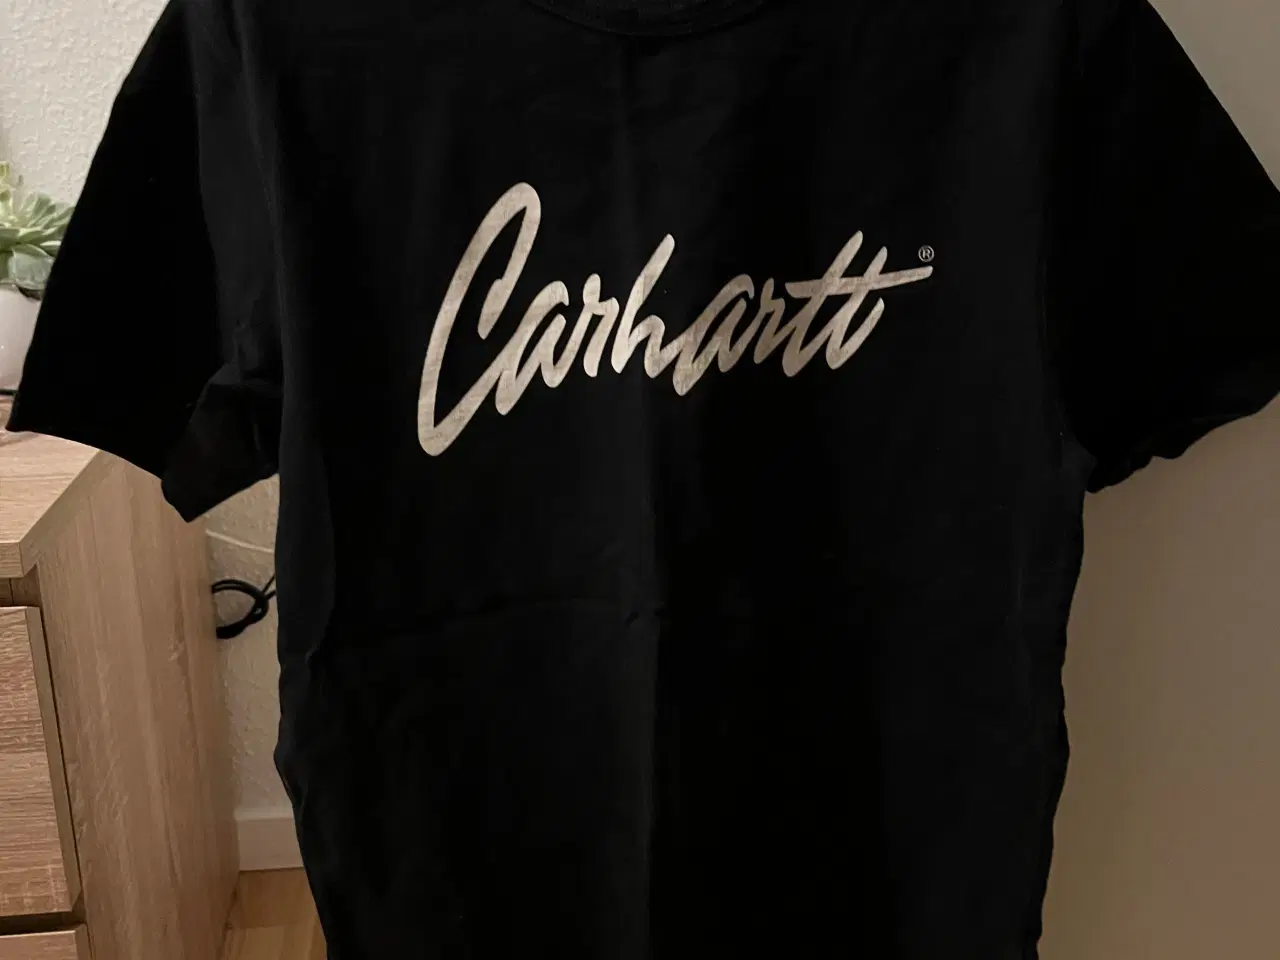 Billede 1 - Carhartt t-shirt - str. S